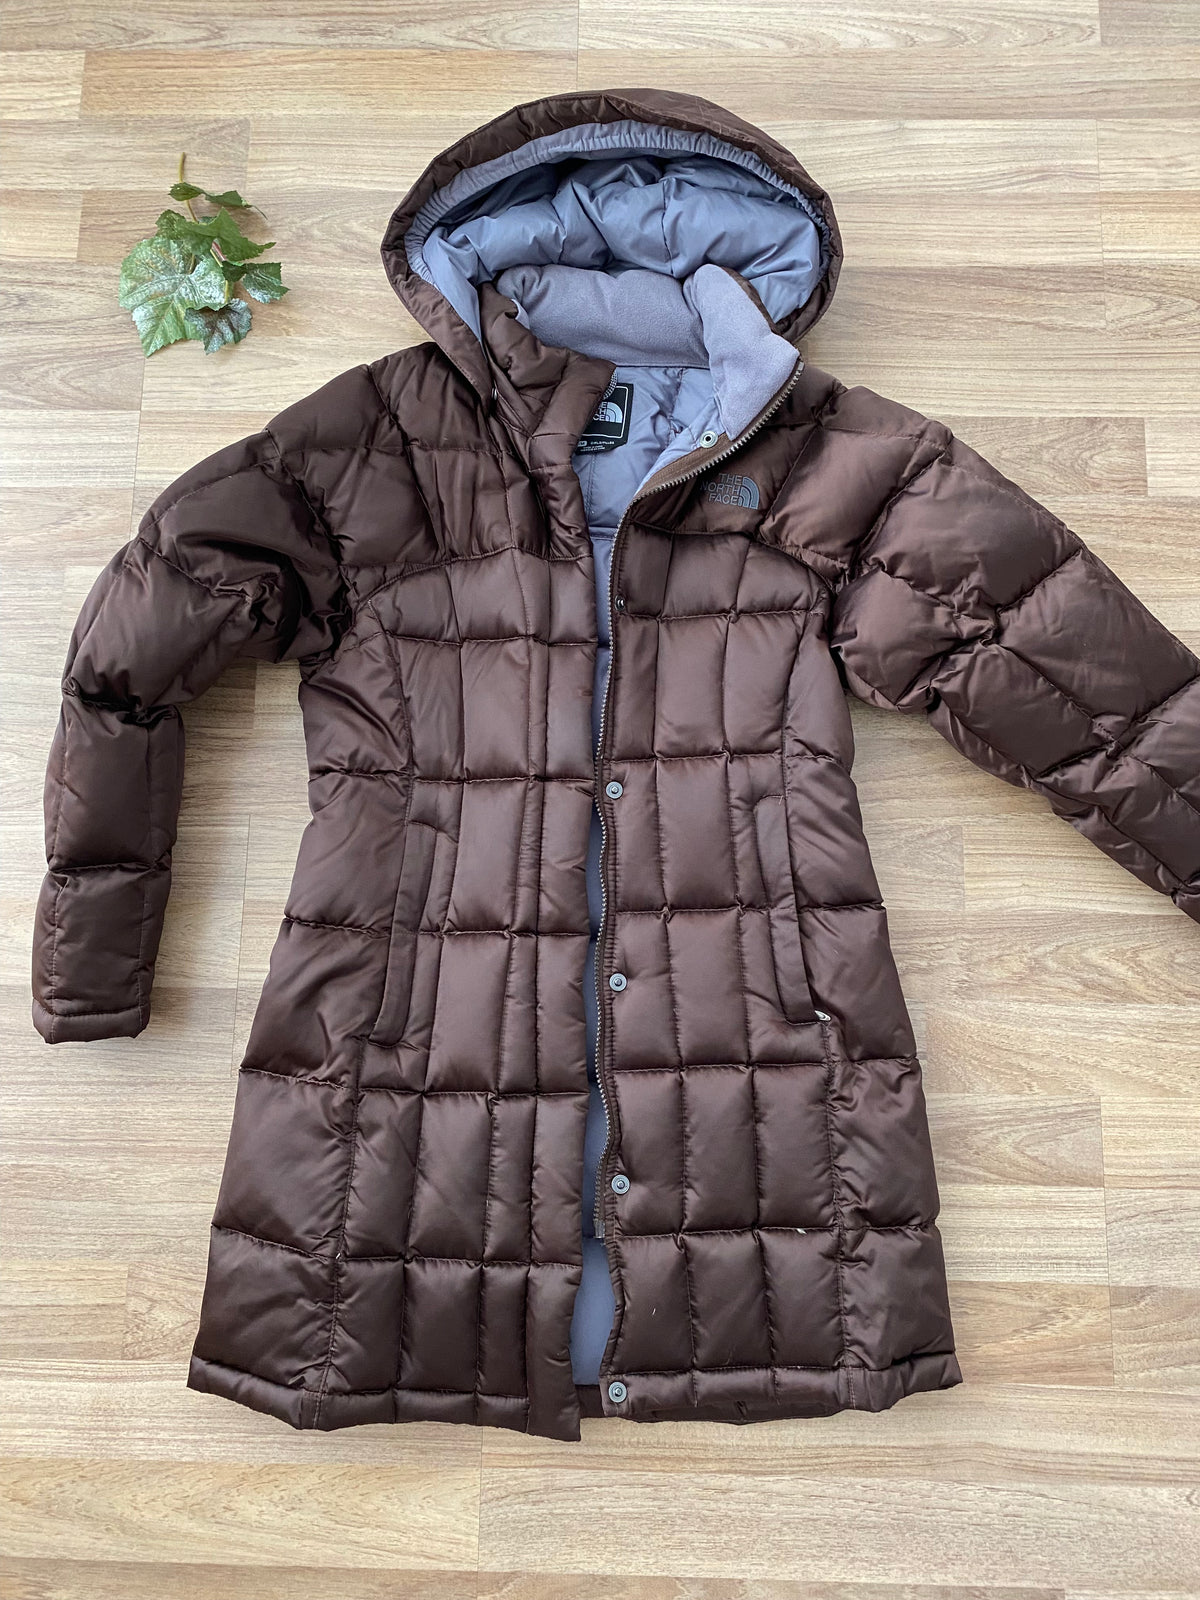 Long Puffer Winter Coat (Girls Size 10-12)